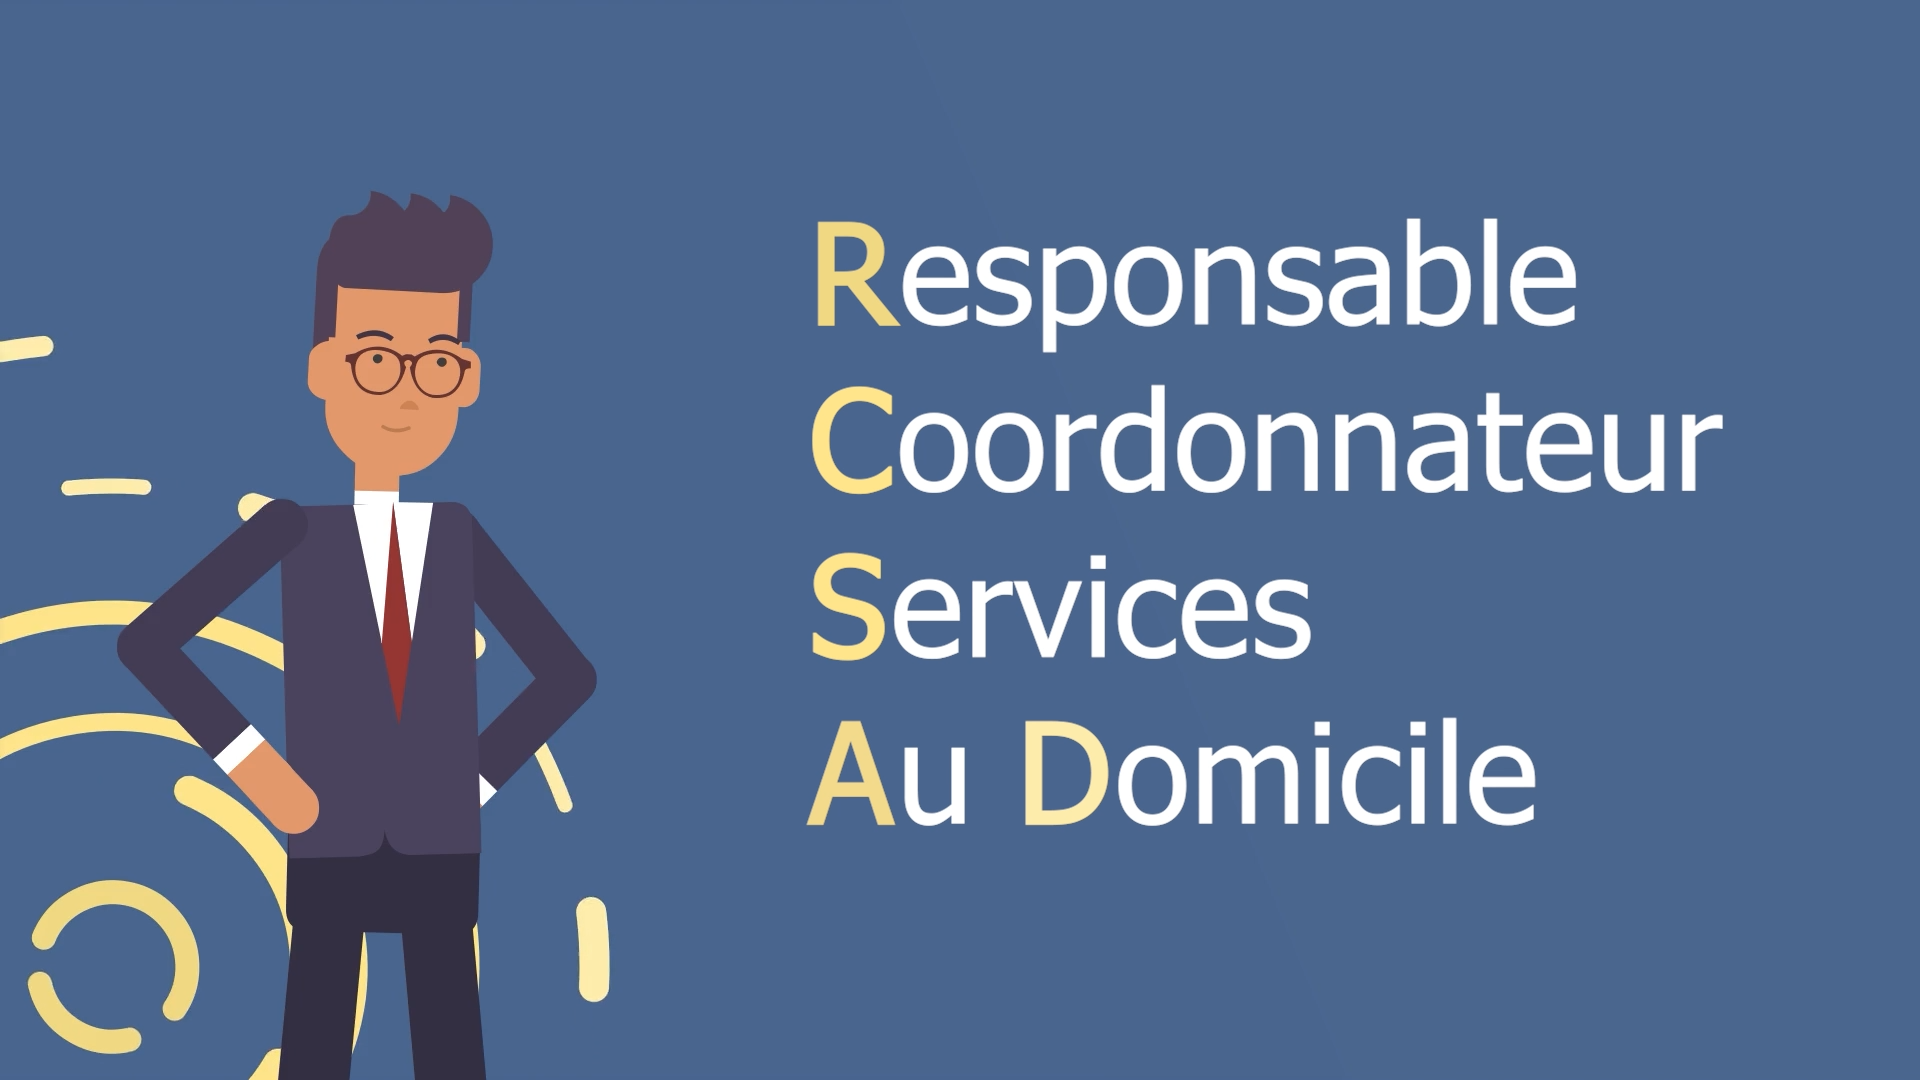 Découvrez la formation de Responsable Coordonnateur Services Au Domicile (RCSAD)